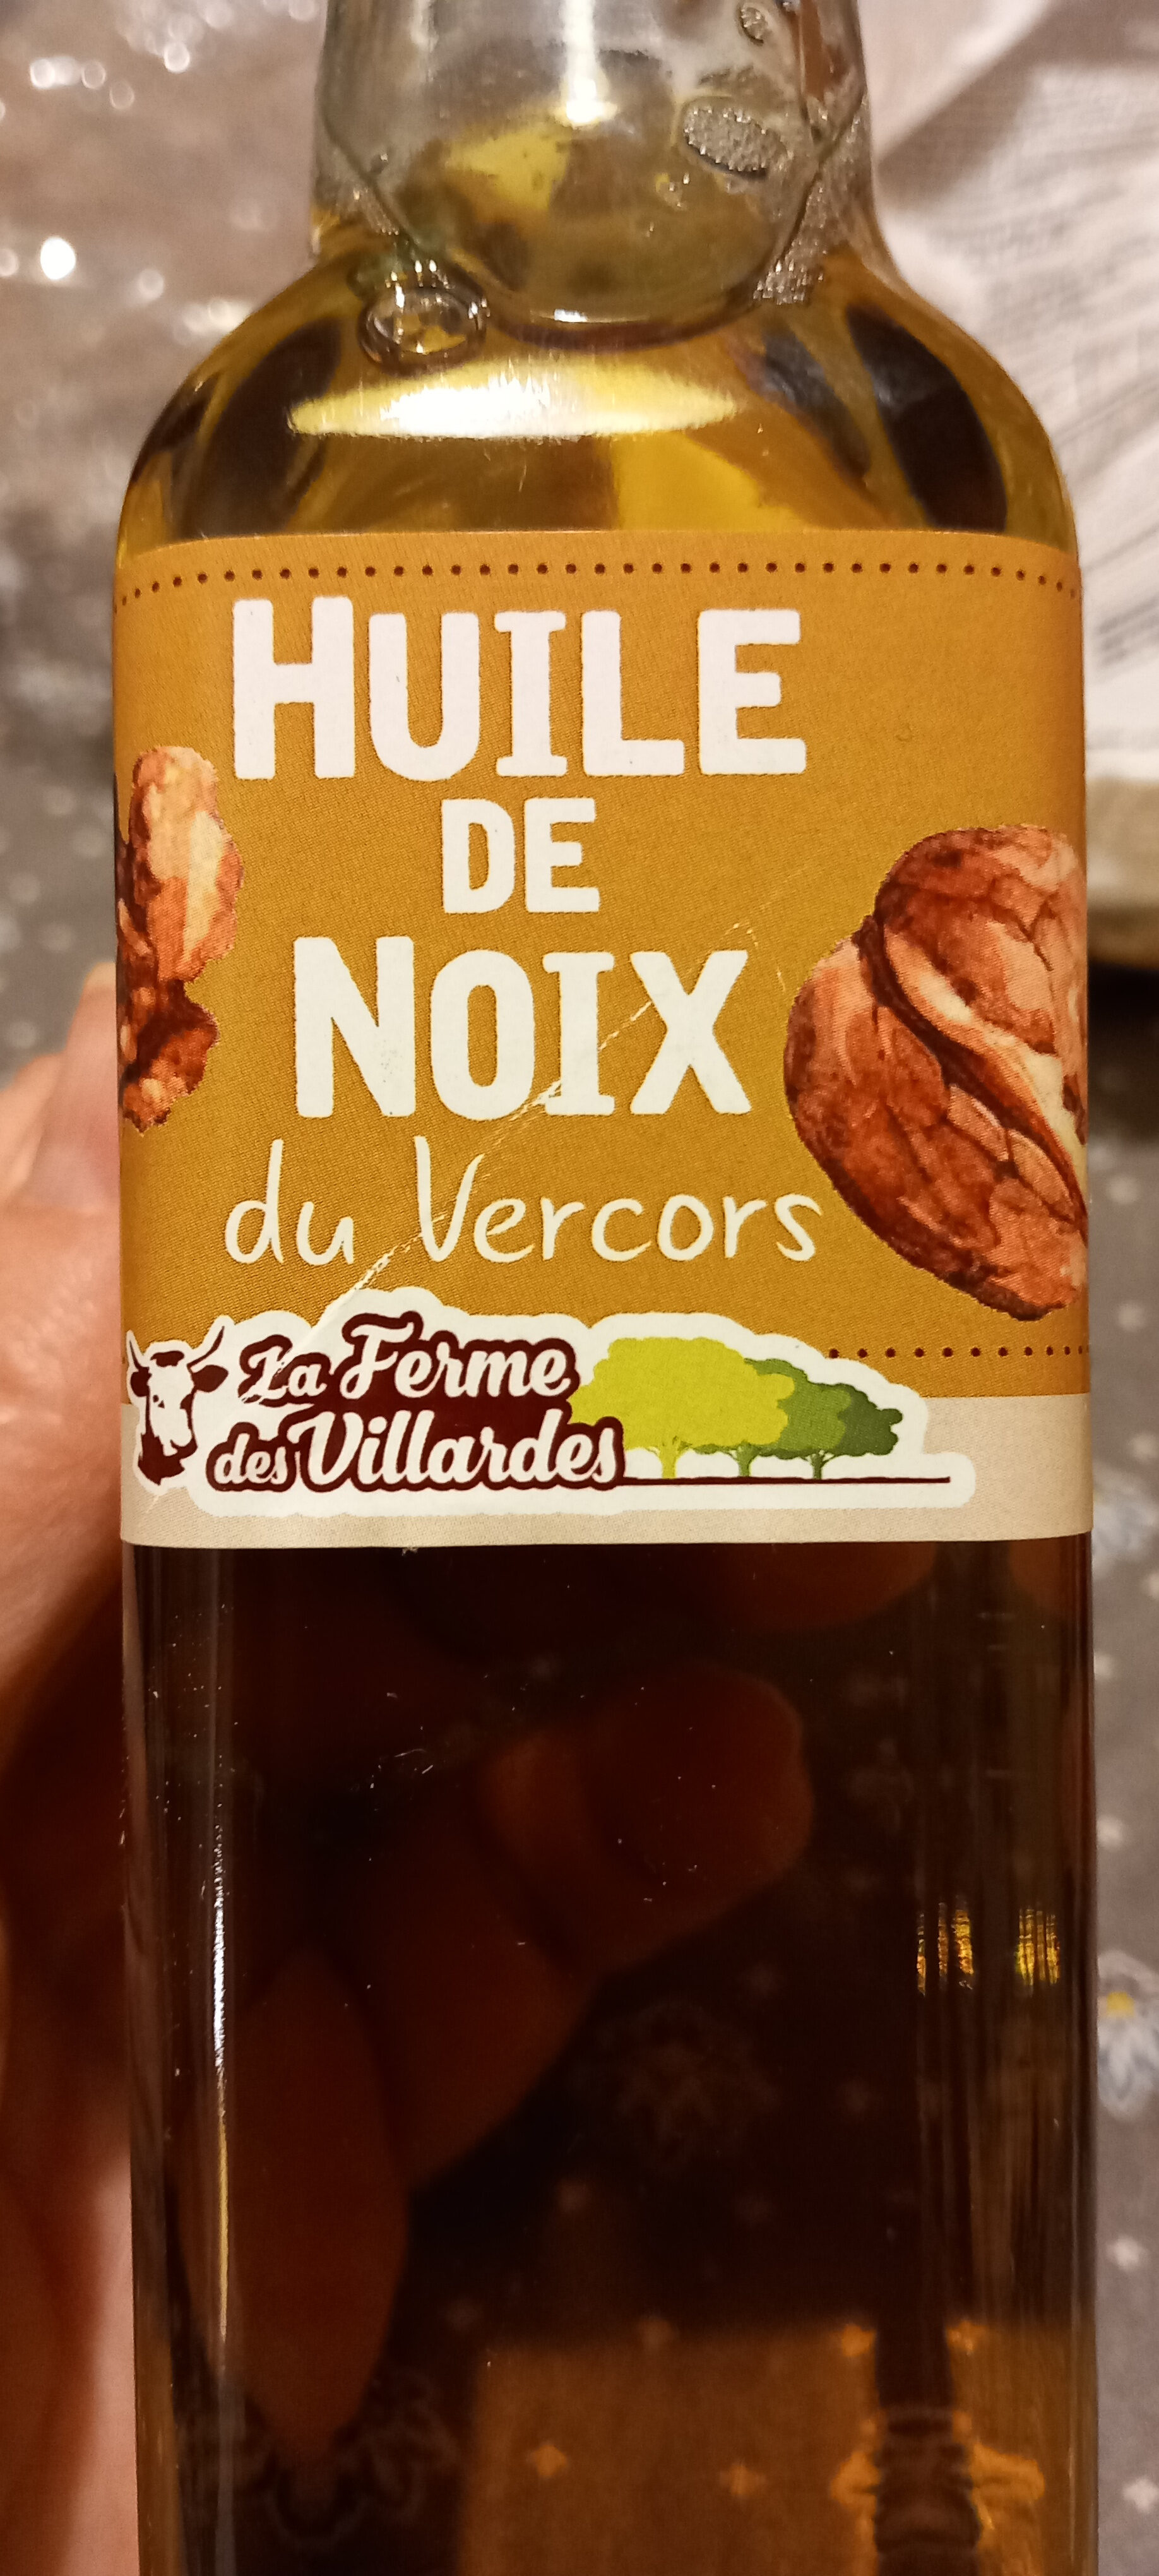 Huile de noix du Vercors - Product - fr